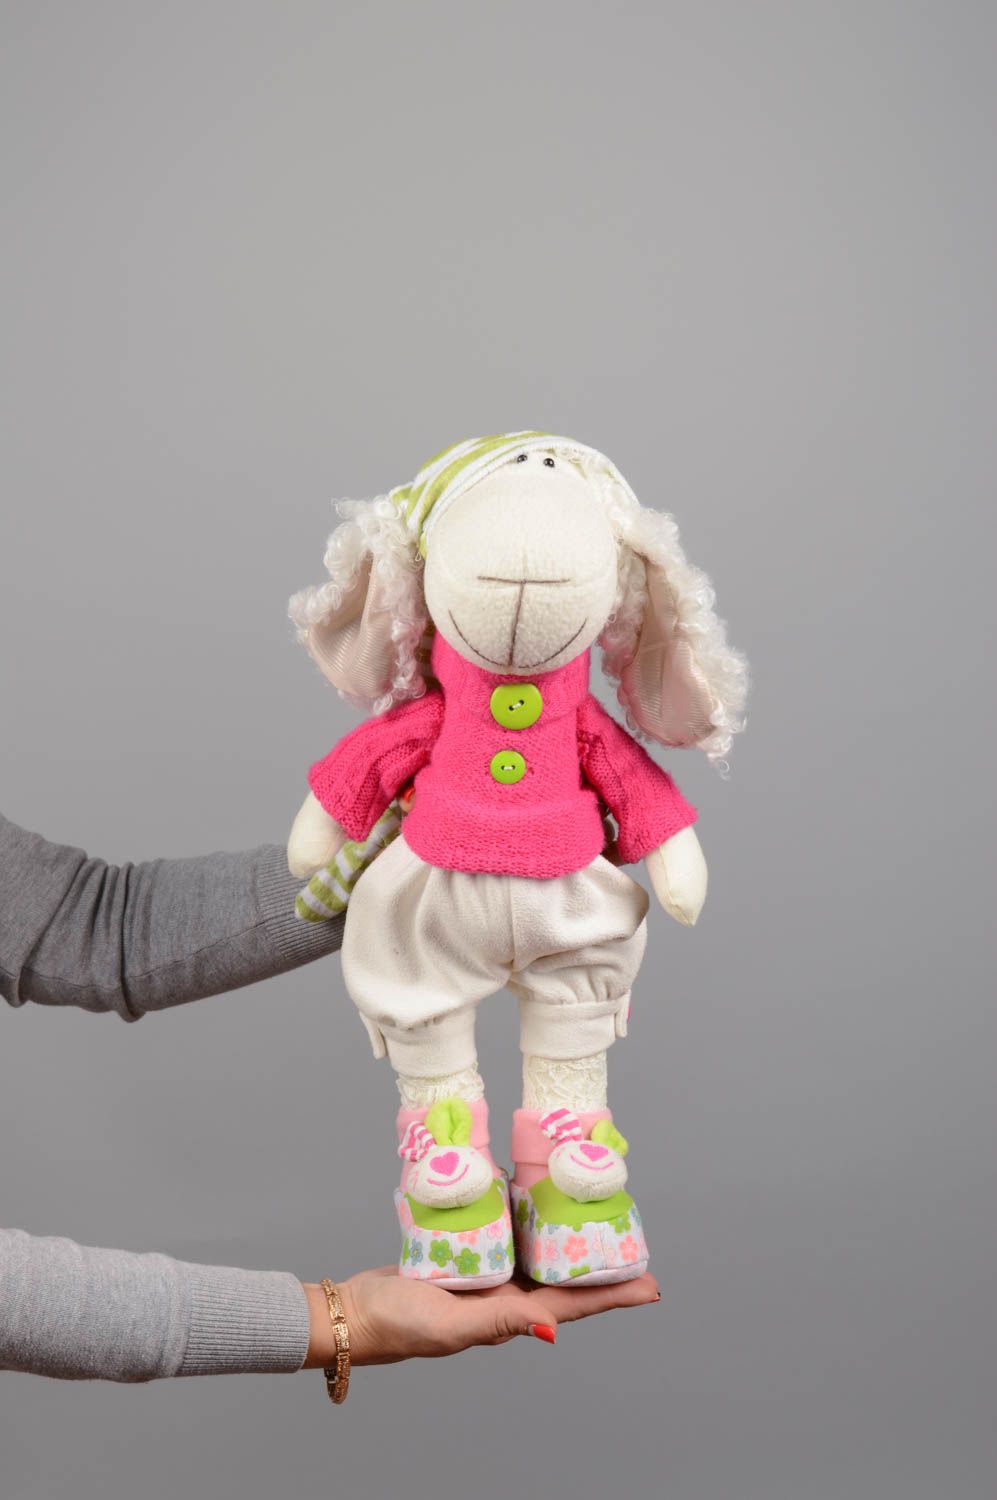 Textil Kuscheltier Schaf mit Mütze niedlich Spielzeug für Kinder und Dekor  foto 5